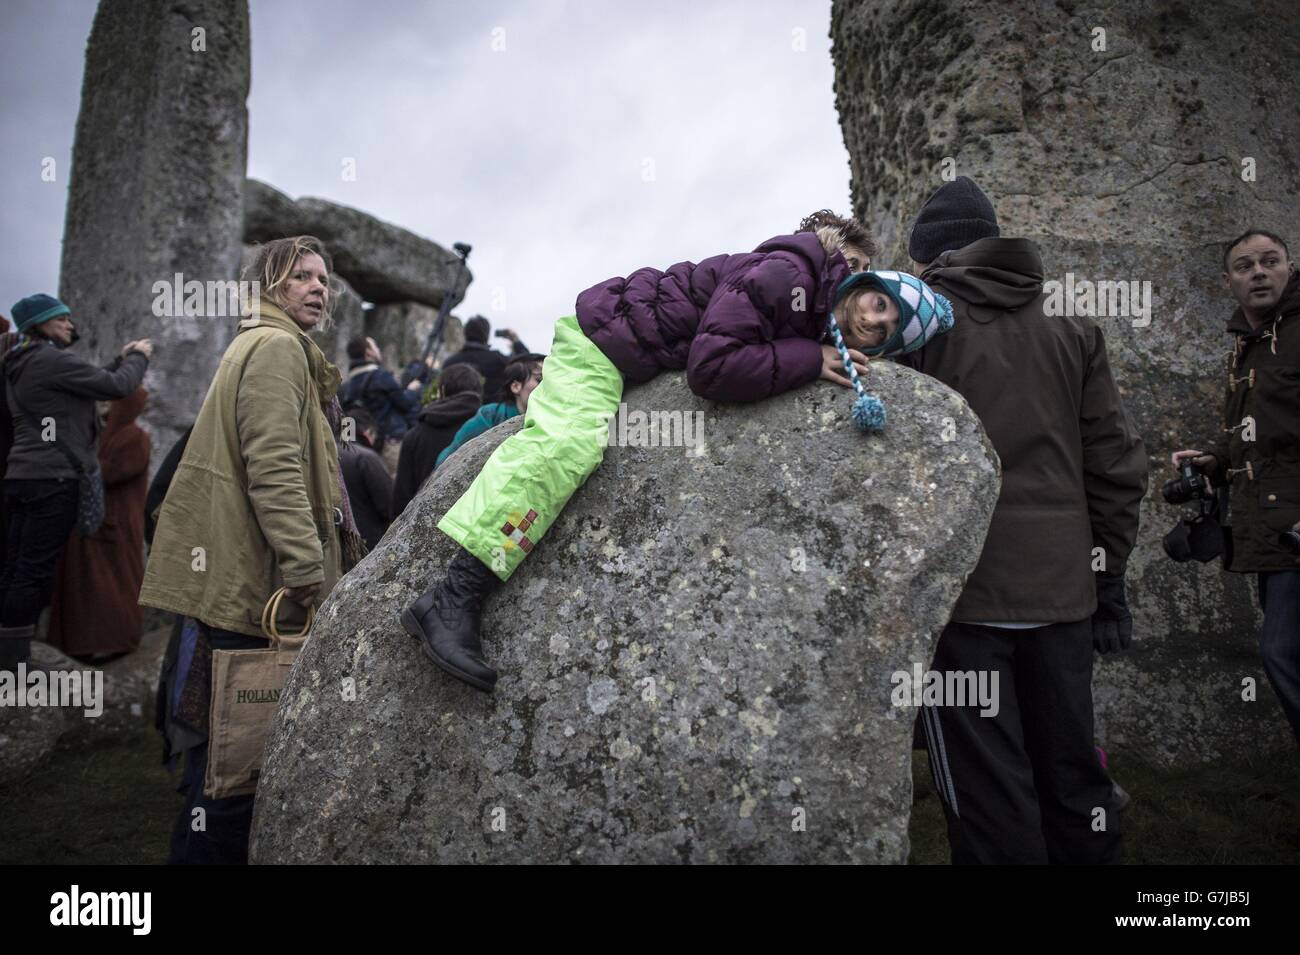 Una ragazza si stende su una pietra a Stonehenge, nel Witshire, dove la gente si riunisce per celebrare il solstizio invernale. Foto Stock